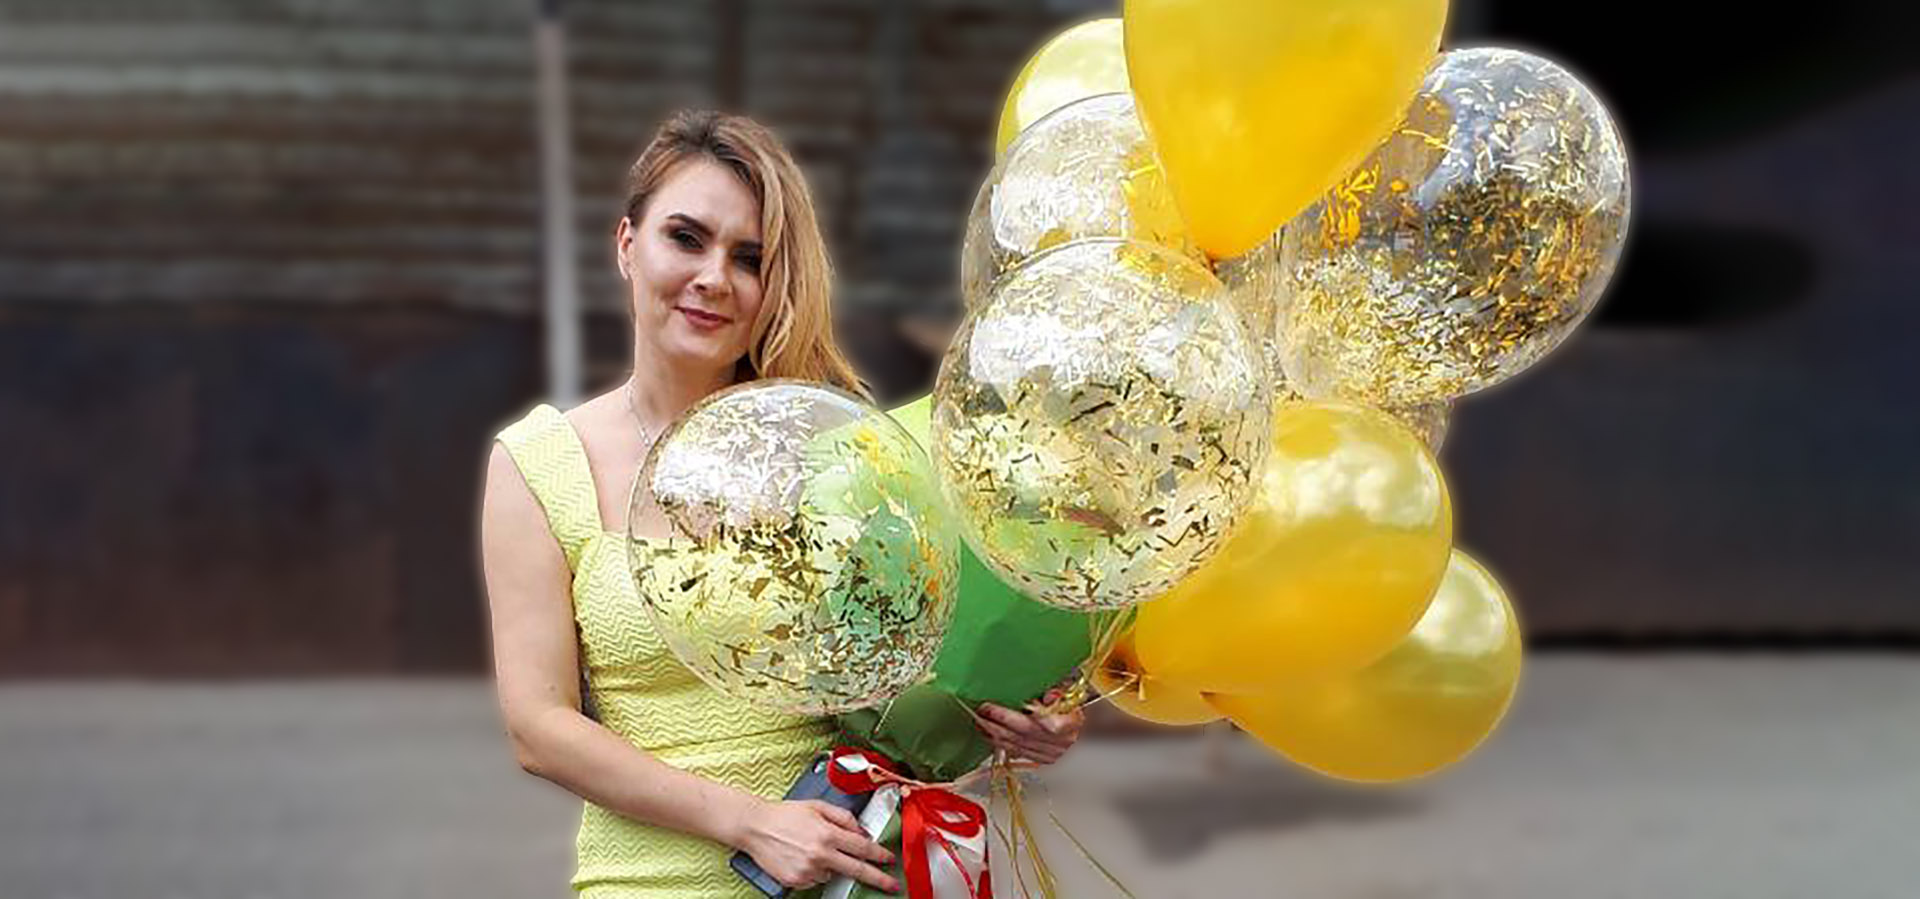 цветы и воздушные шарики для ее улыбки